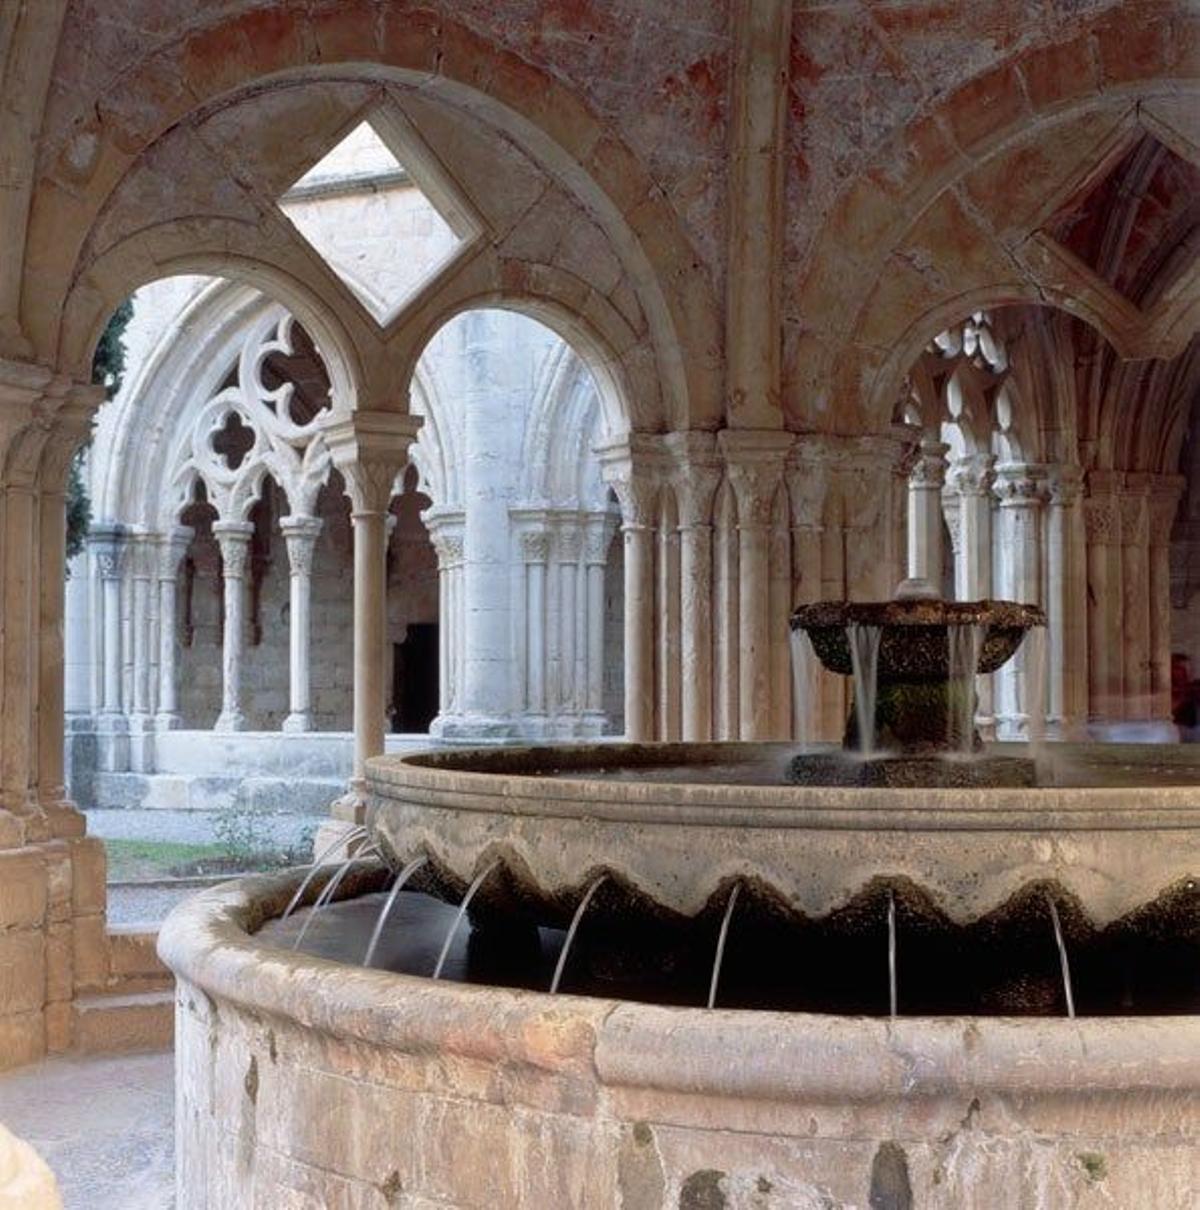 La fuente del claustro es una de las construcciones más llamativas del monasterio de Poblet y es de estilo románico.